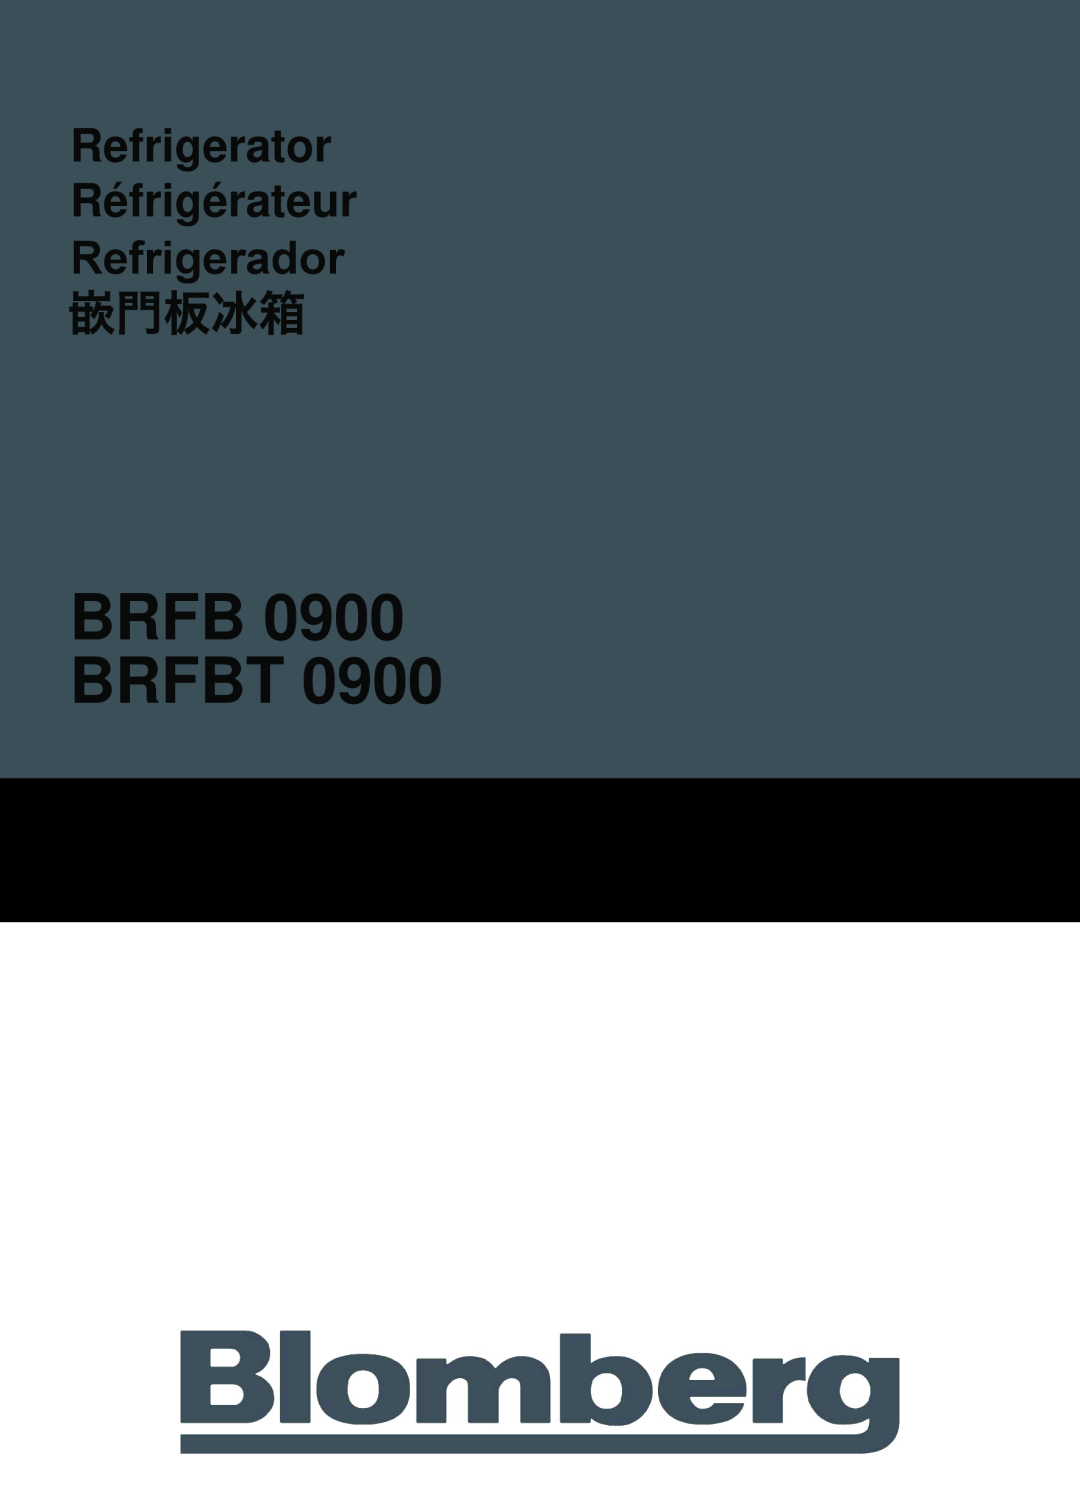 Blomberg BRFBT 0900 manual BRFB 0900 BRFBT, Refrigerator Réfrigérateur, Refrigerador 